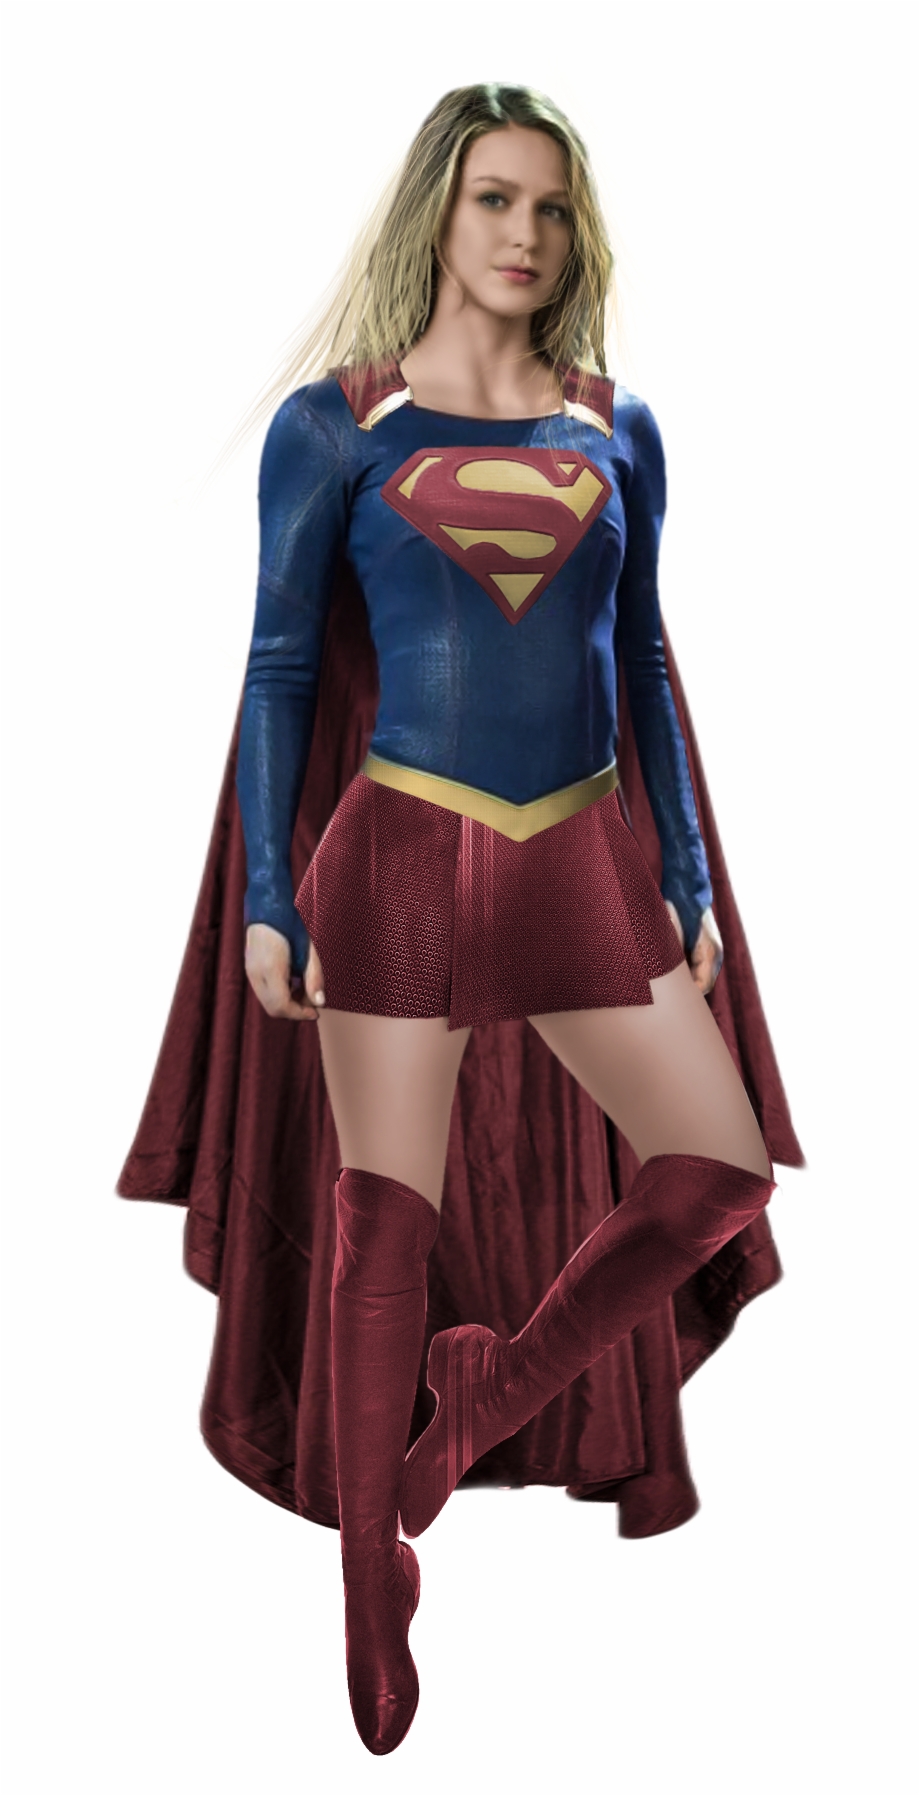 Supergirl Png Download Image Supergirl Transparent